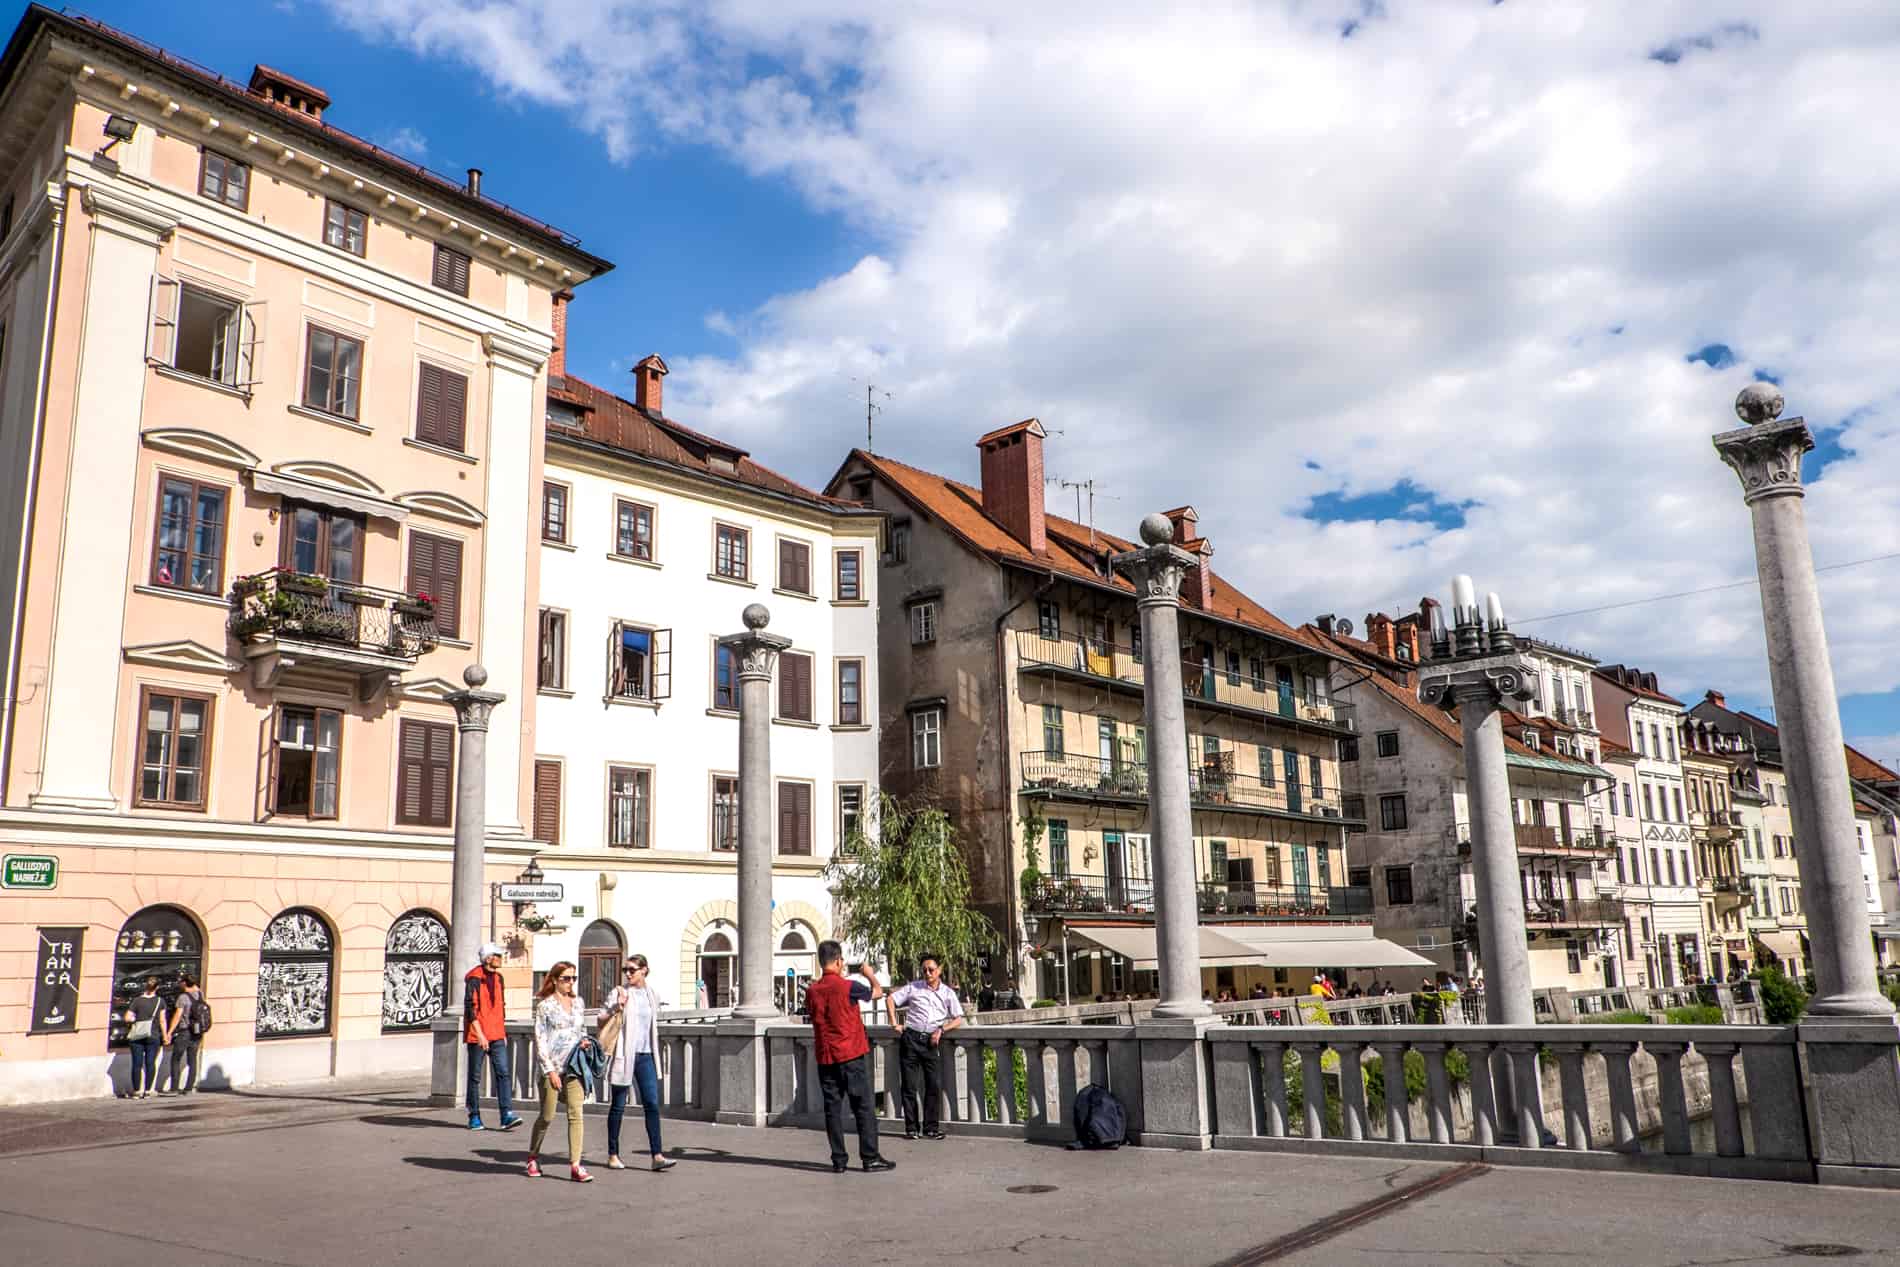 Poeple walking over the Plečnik designed Cobbler’s Bridge in Ljubljana in front of old town buildings. 